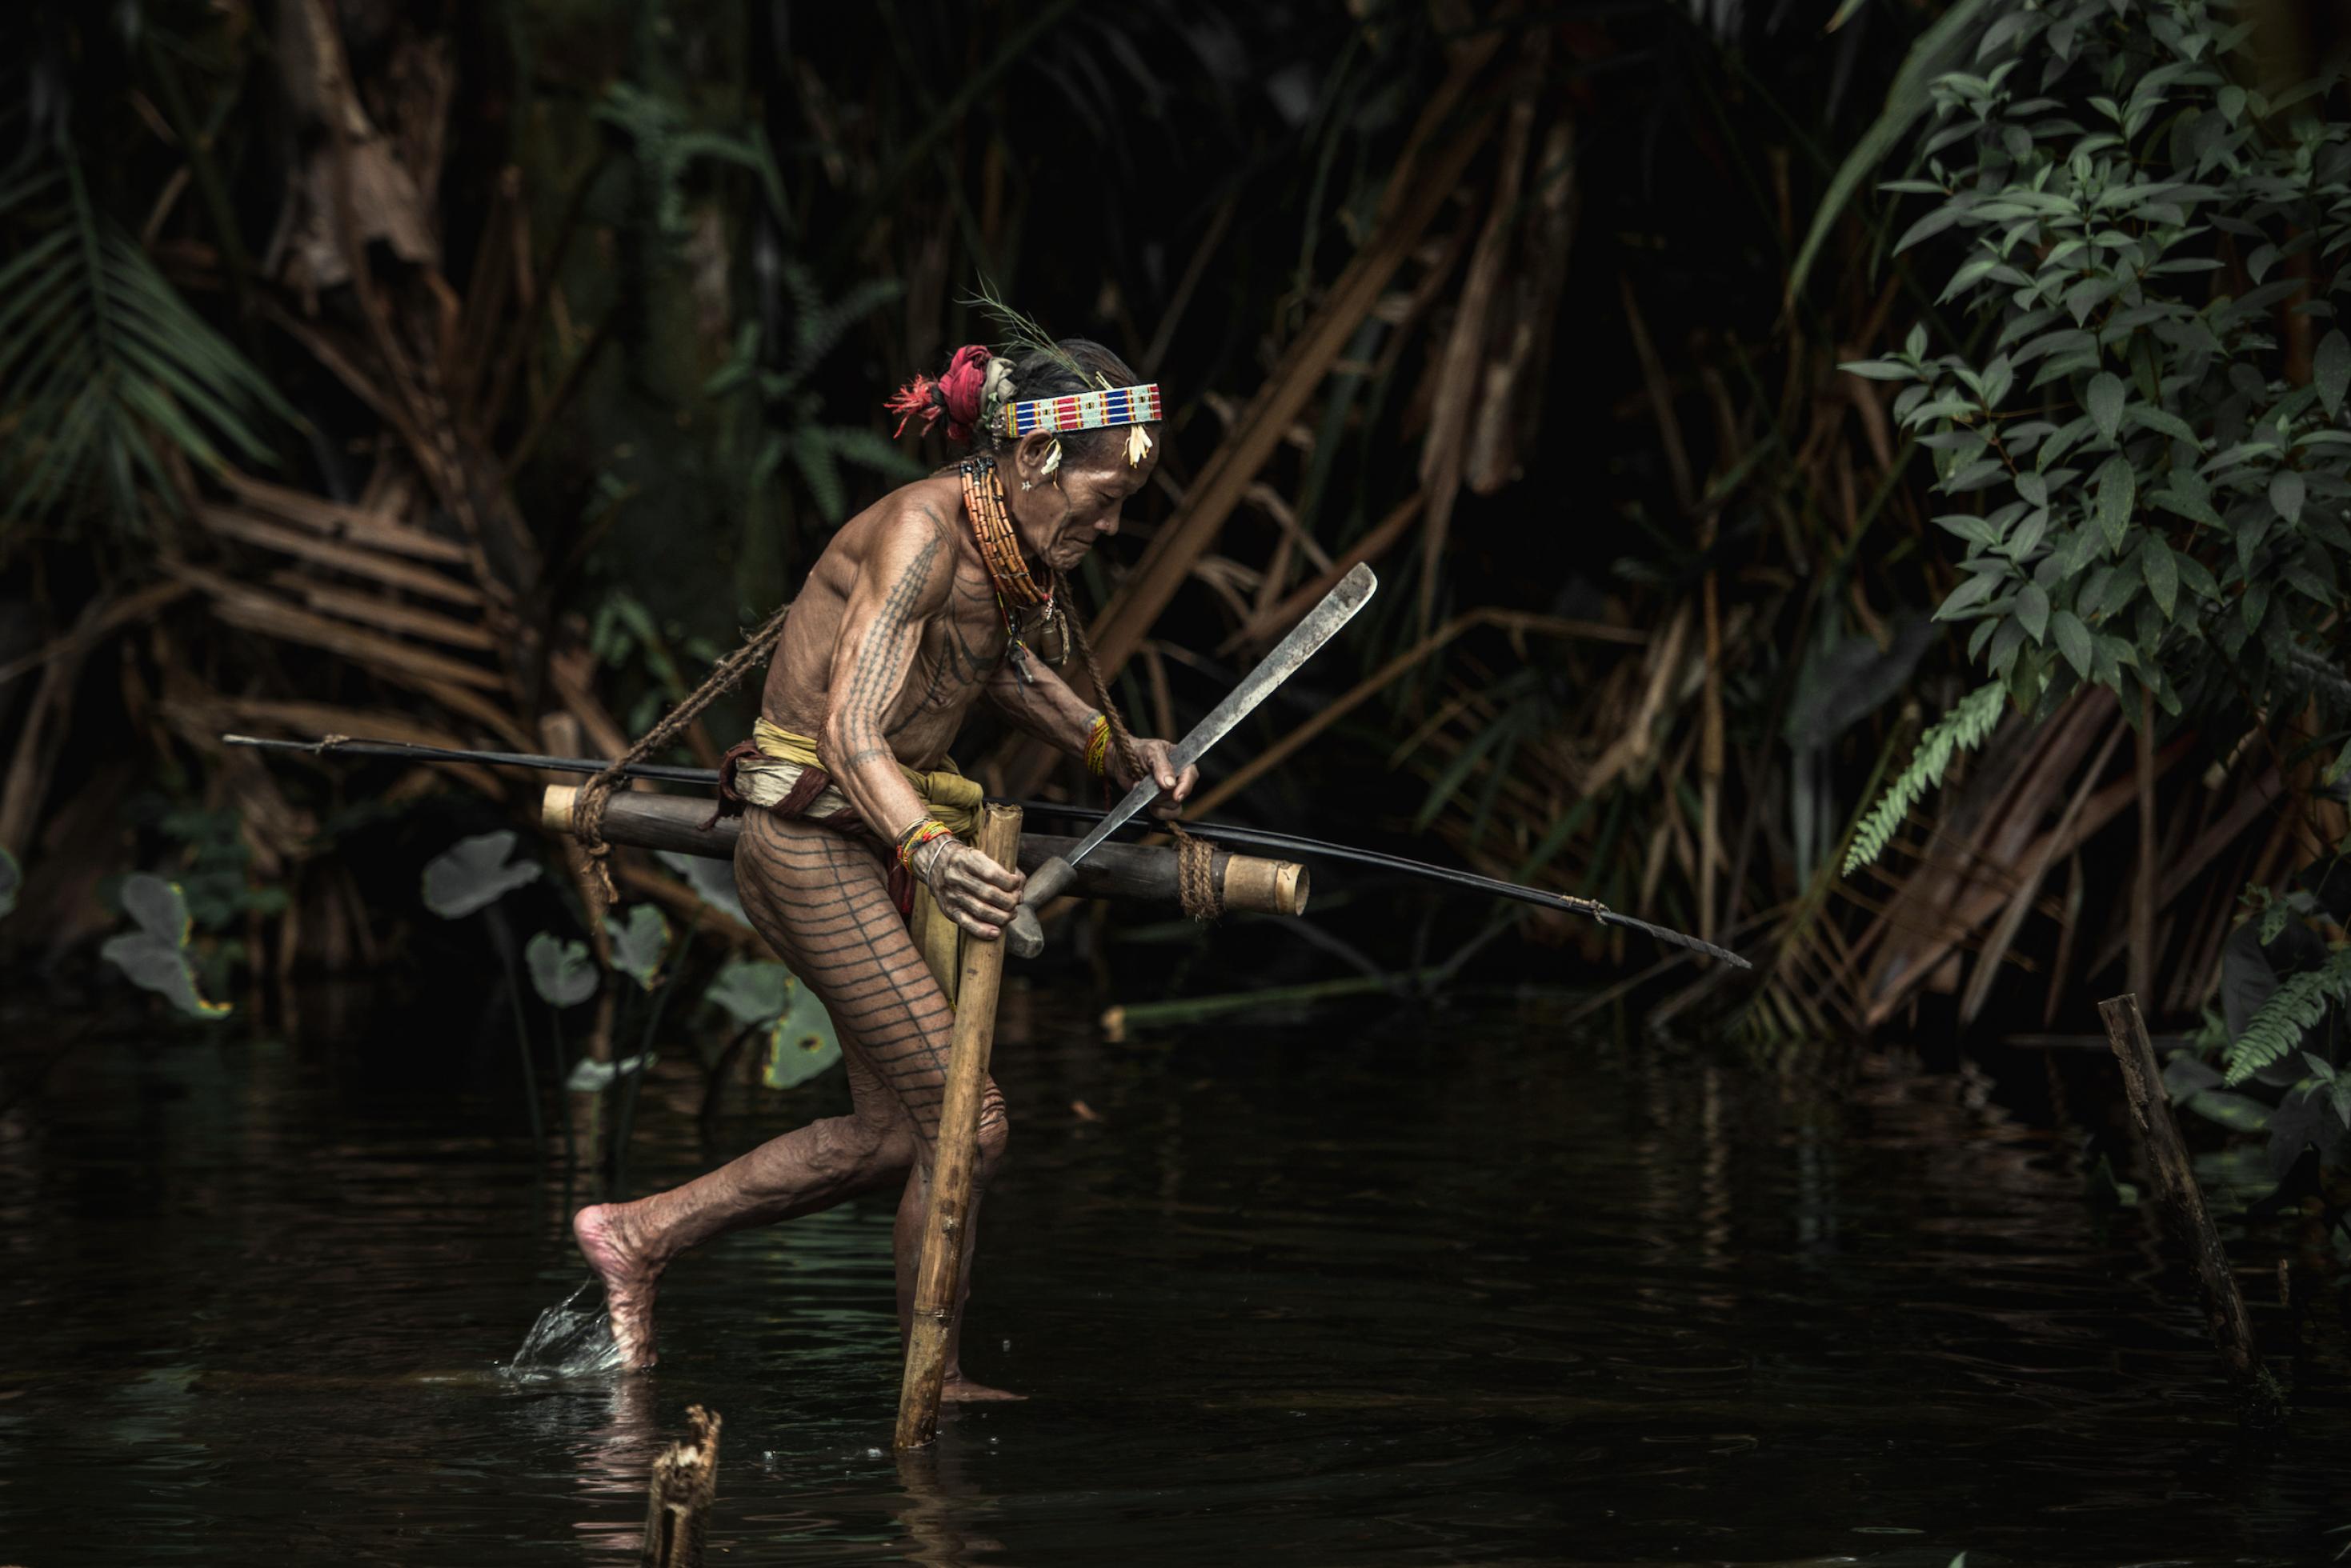 Indigener mit Tätowierungen watet durch einen Bach, er hat eine Machete in der Hand.